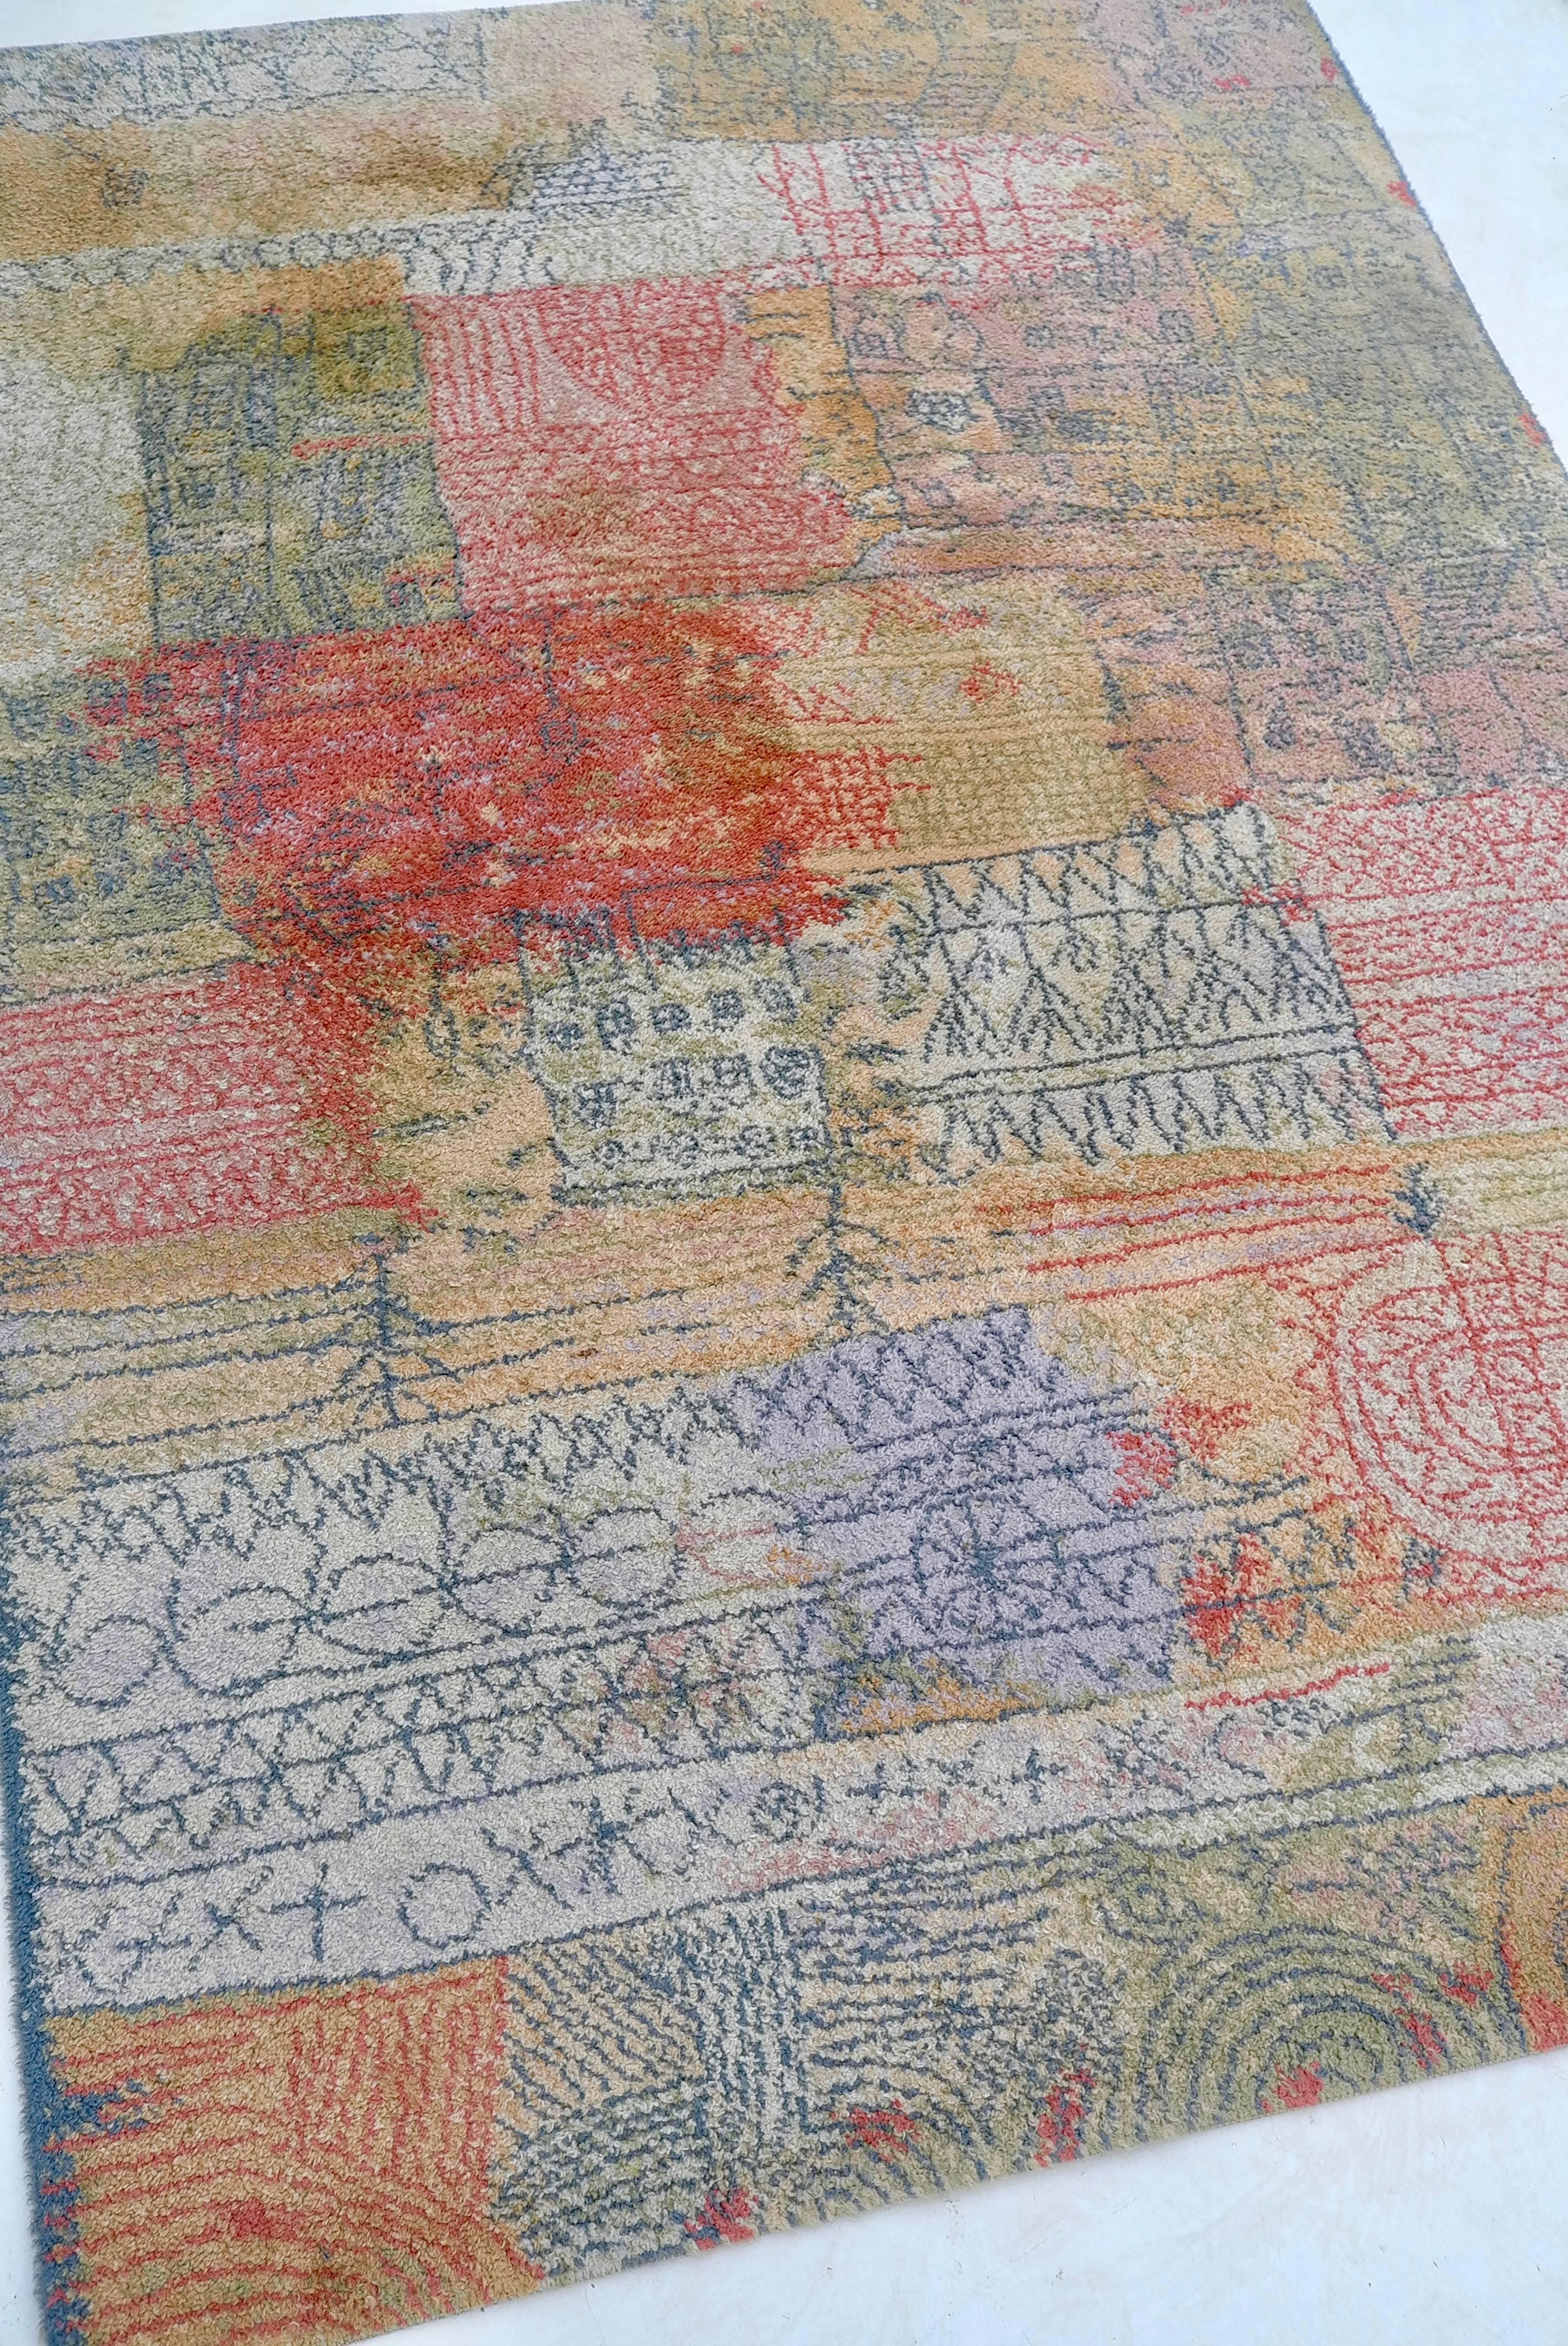 Paul Klee carpet, by Ege Axminster, 